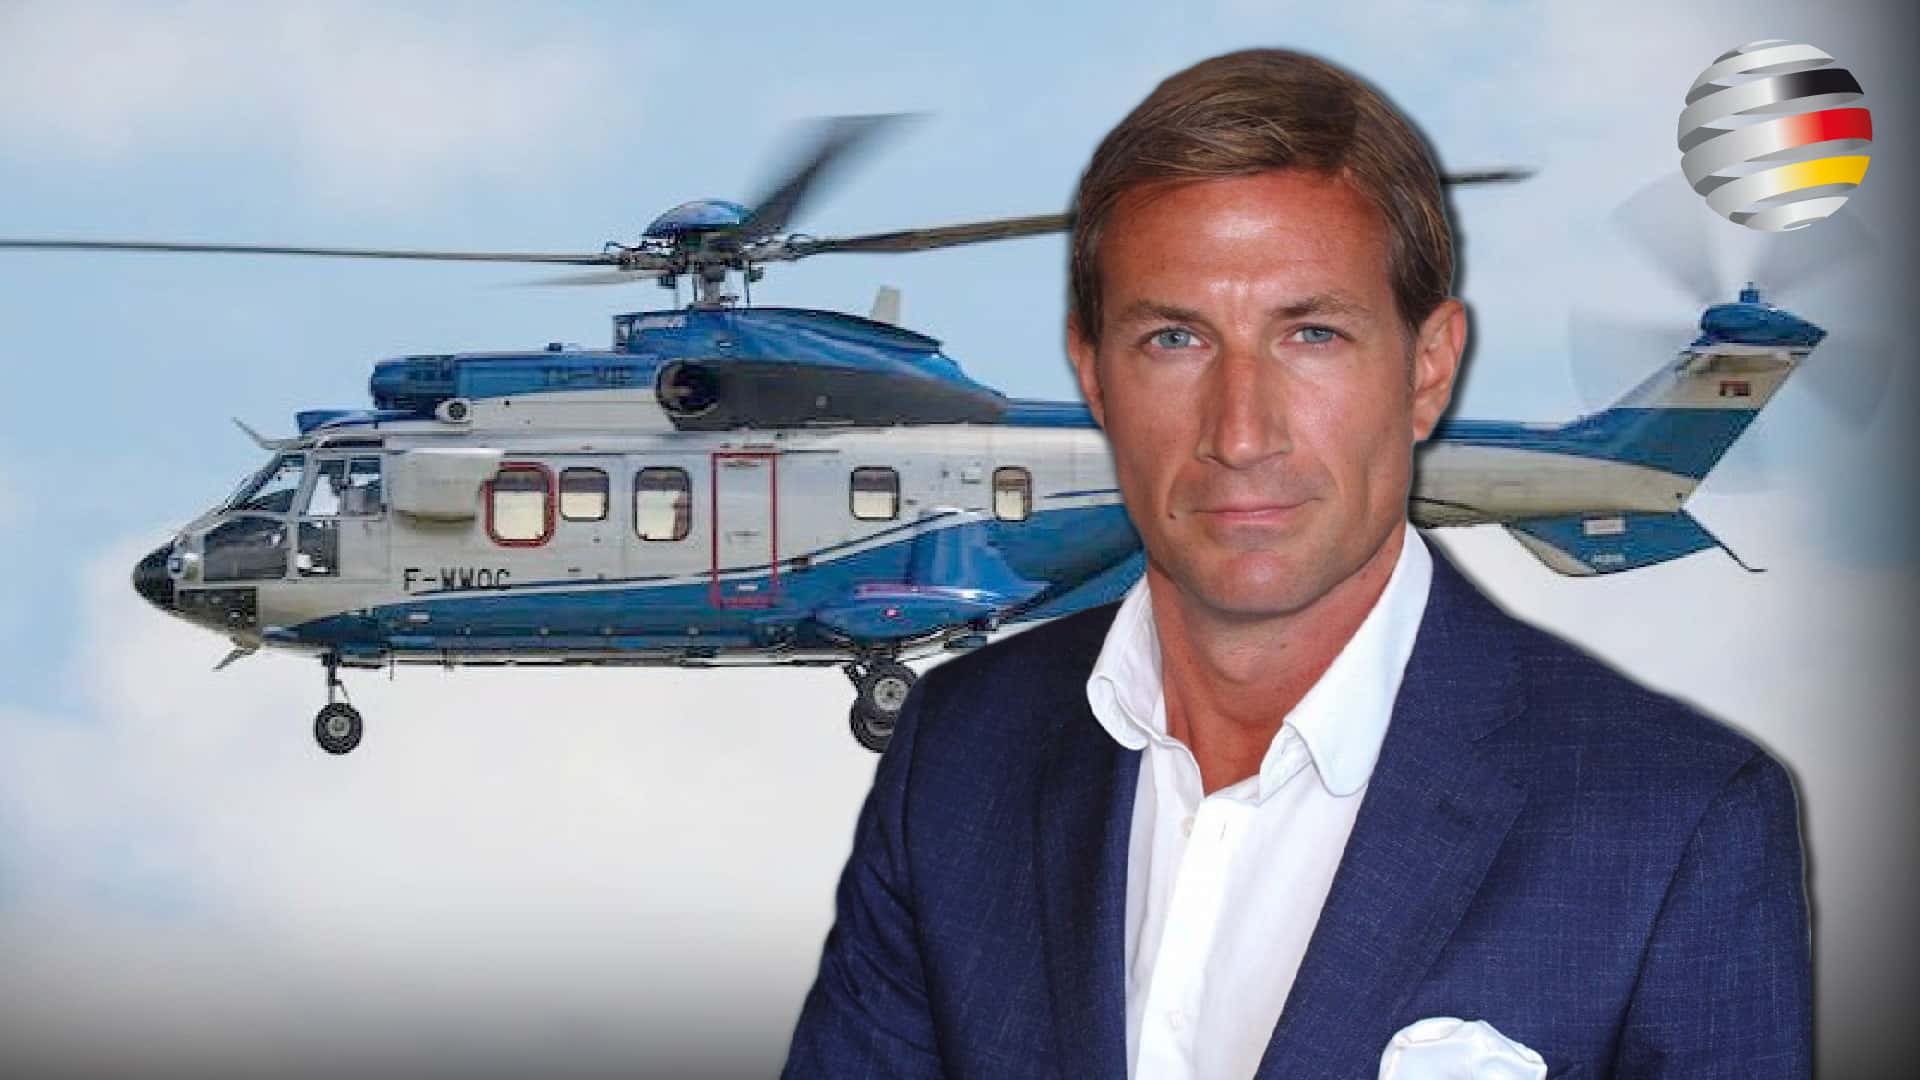 Skandalöse Verschwendung: 200 Millionen Euro für Luxushubschrauber! | Ein Kommentar von Alexander von Wrese (AfD)